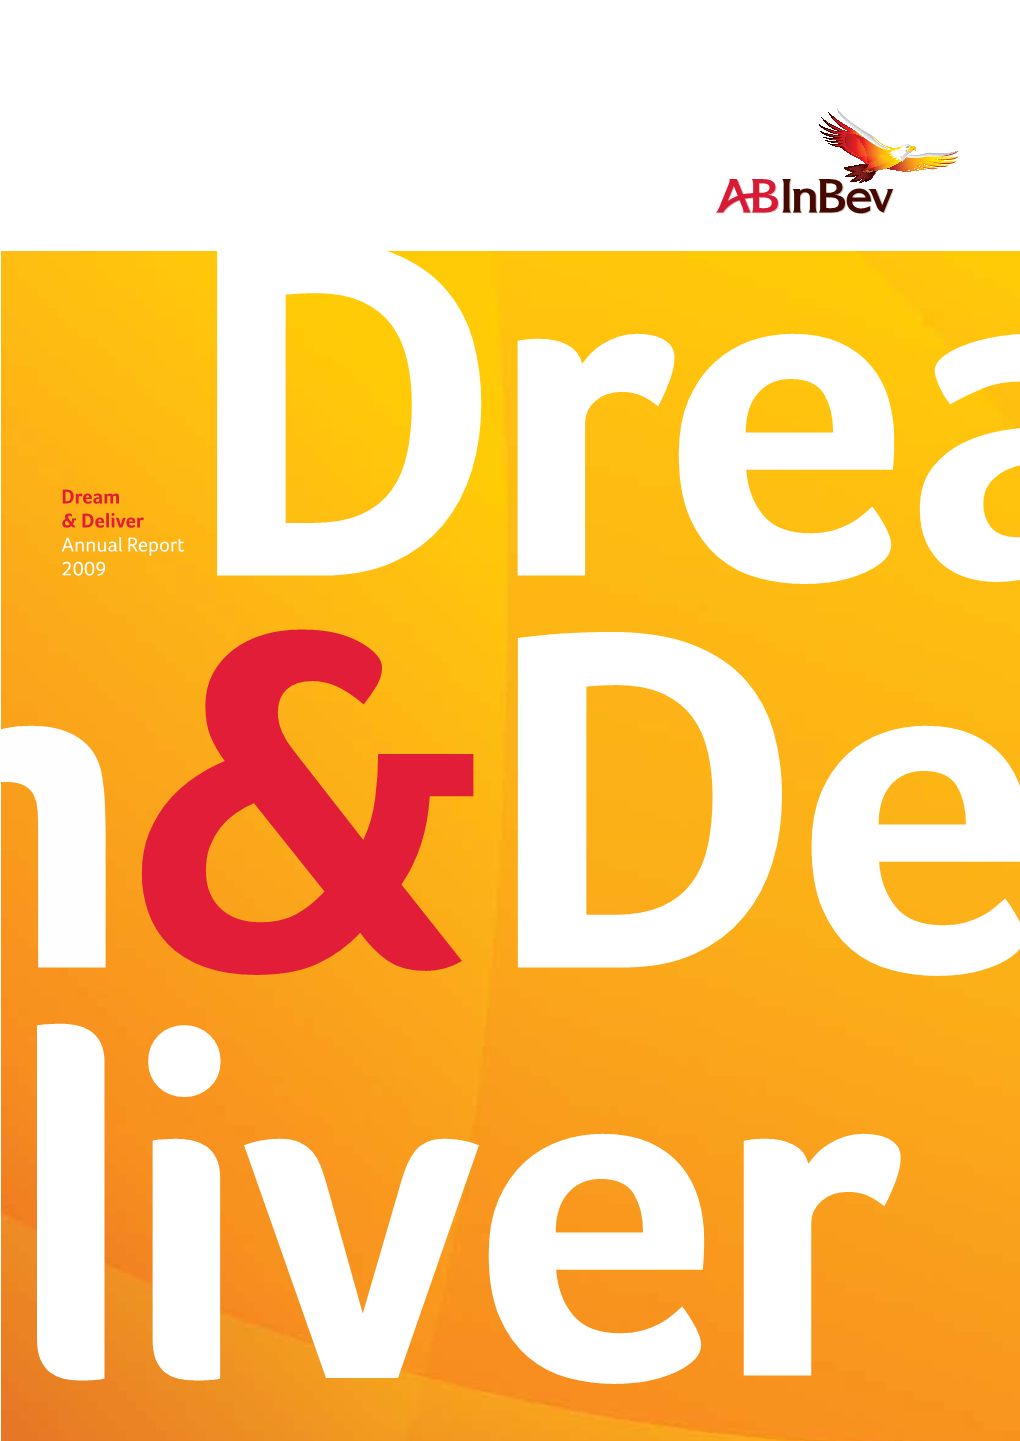 Dream & Deliver Annual Report 2009